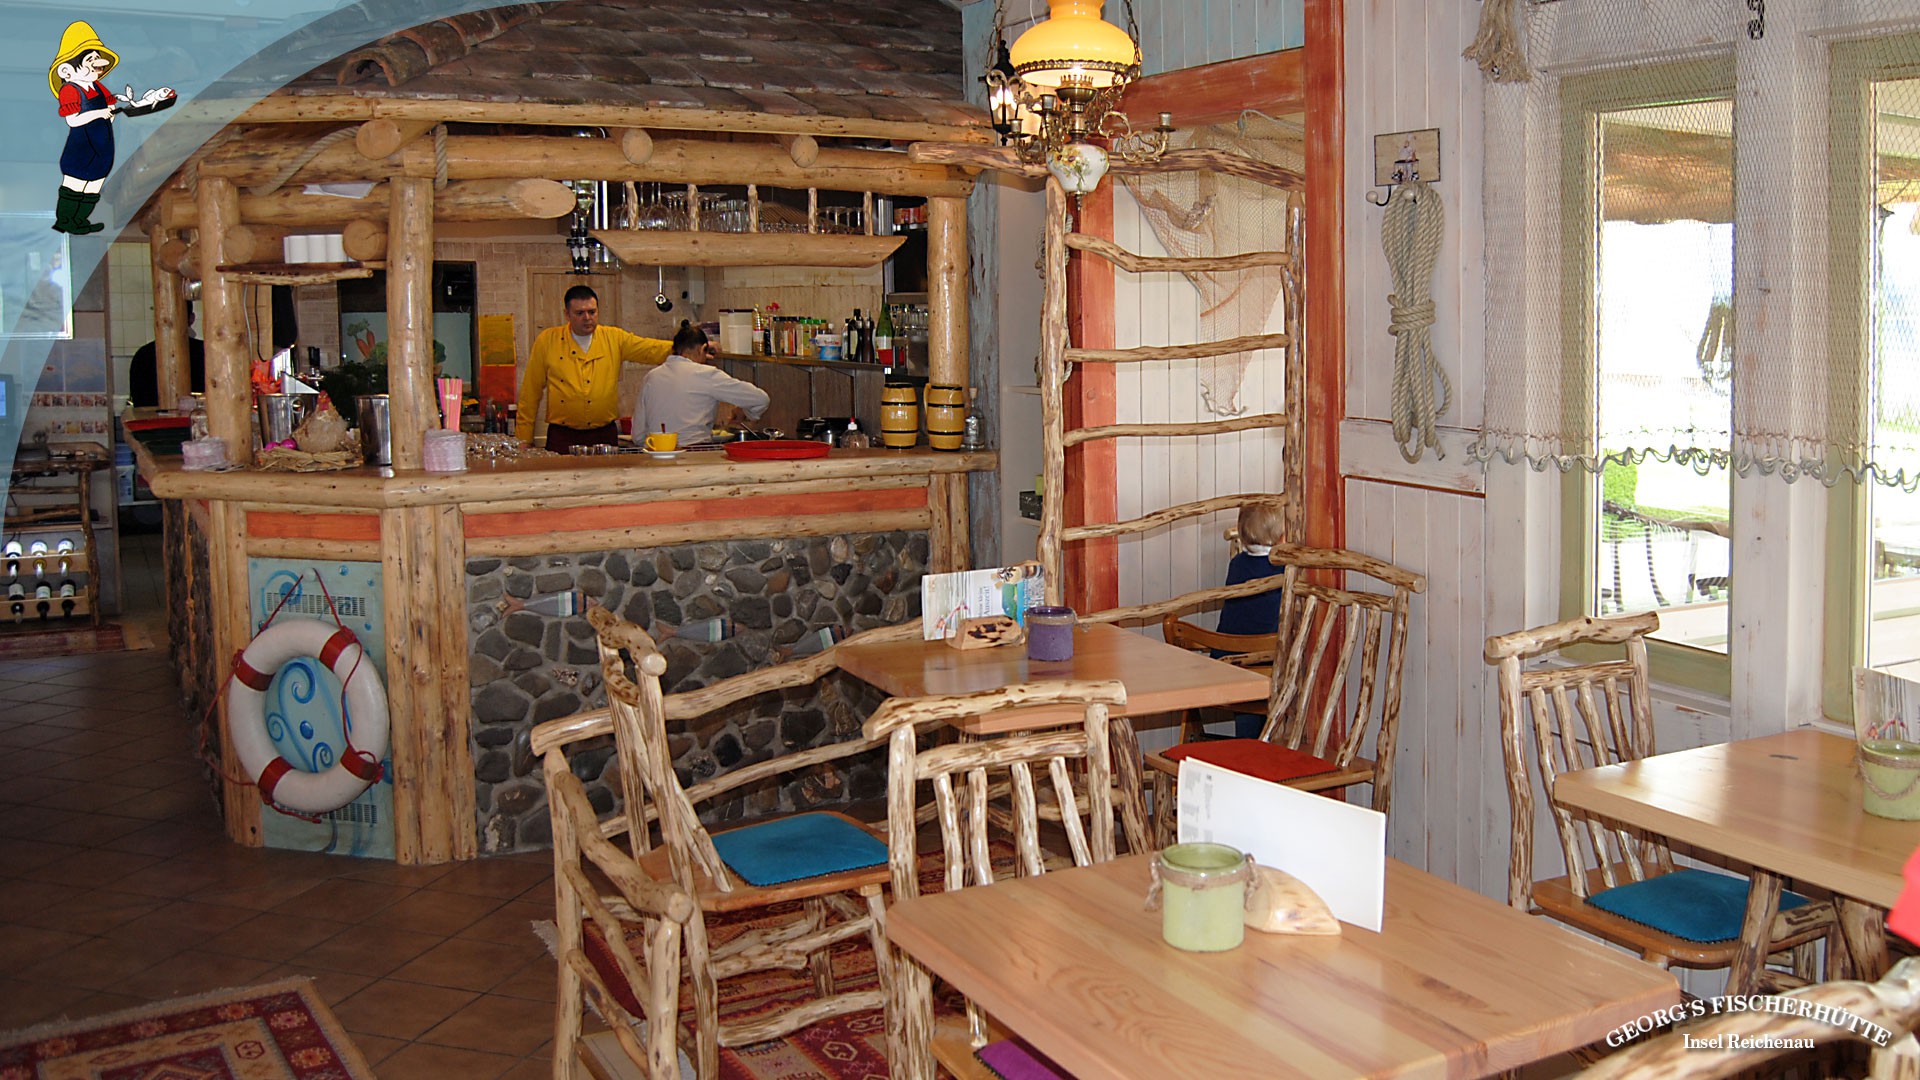 Georg's Fischerhütte: Bodensee-Fischrestaurant Konstanz-Reichenau - einzigartiges Ambiente.